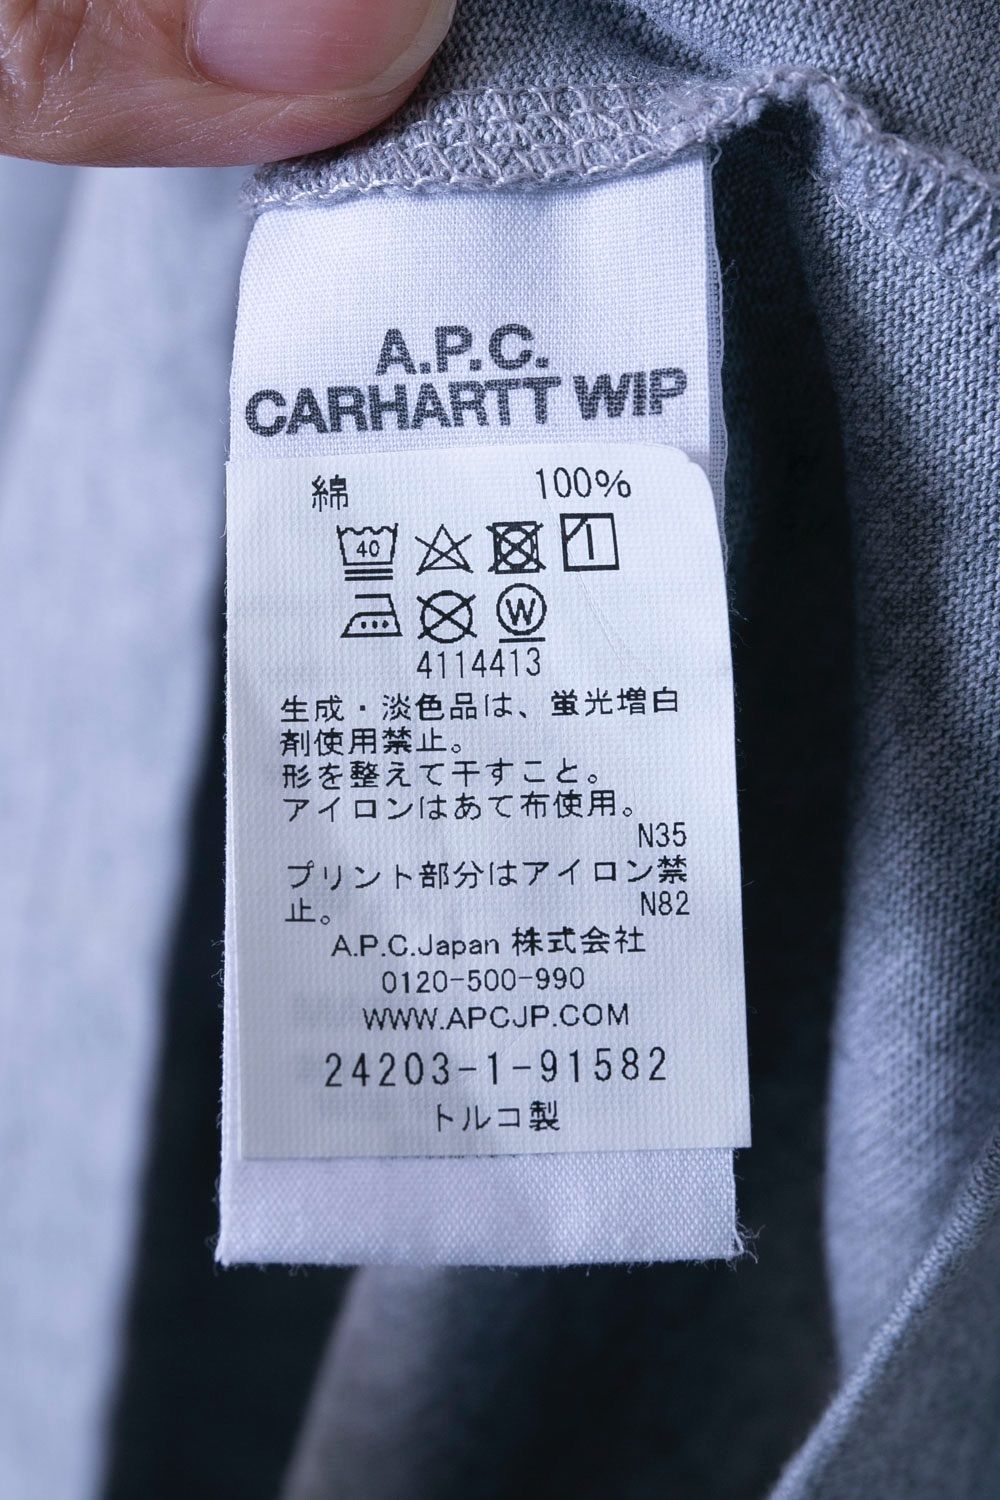 【未使用】A.P.C.×Carhart2020青Tシャツアーペーセーカーハート